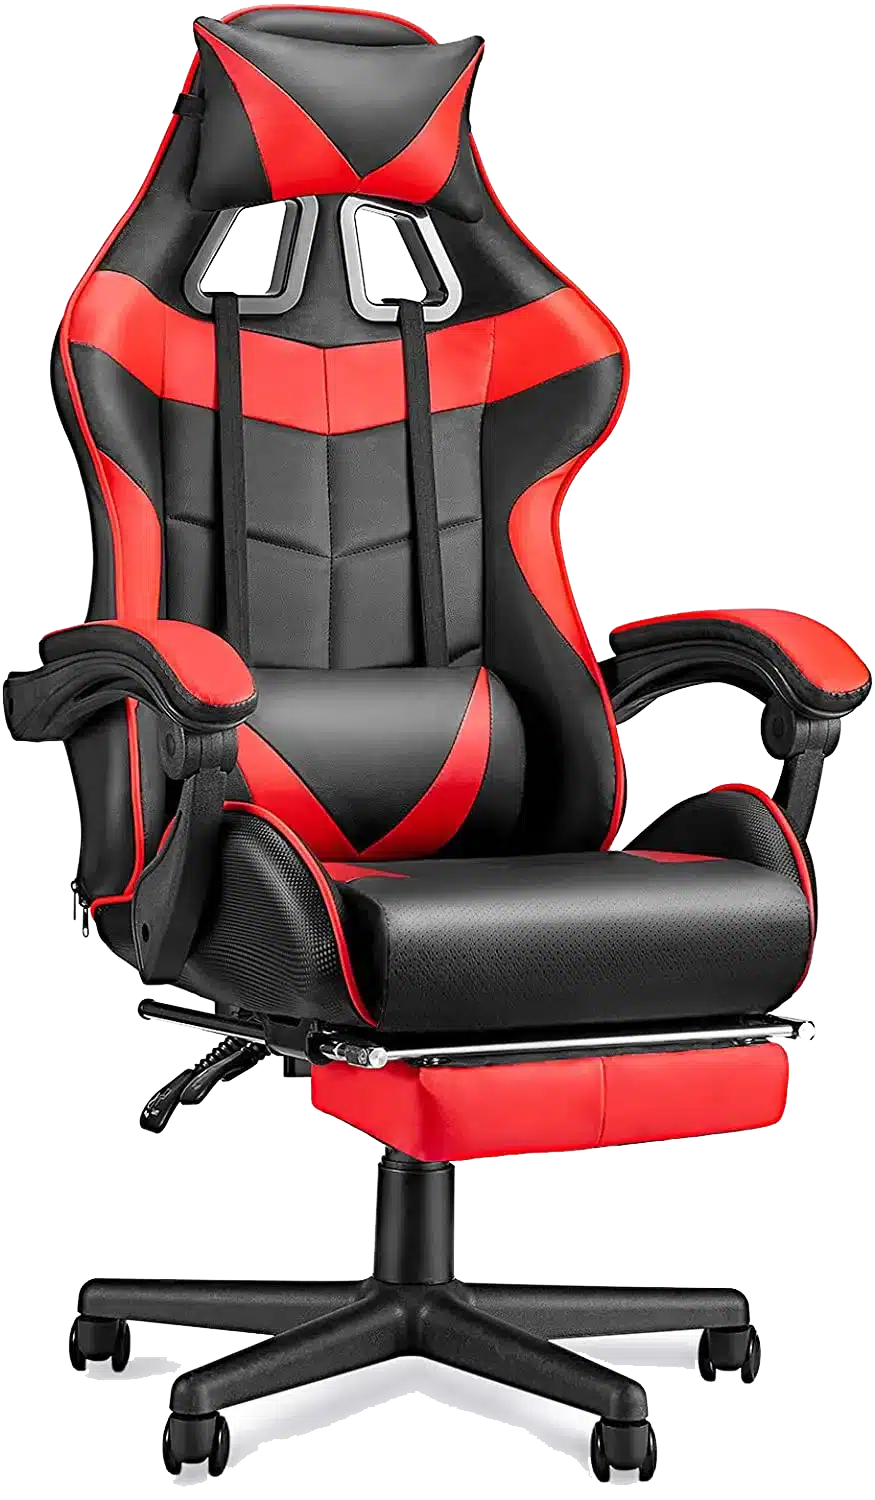 Sedia da Gaming Massaggiante Soontrans, colore Rosso